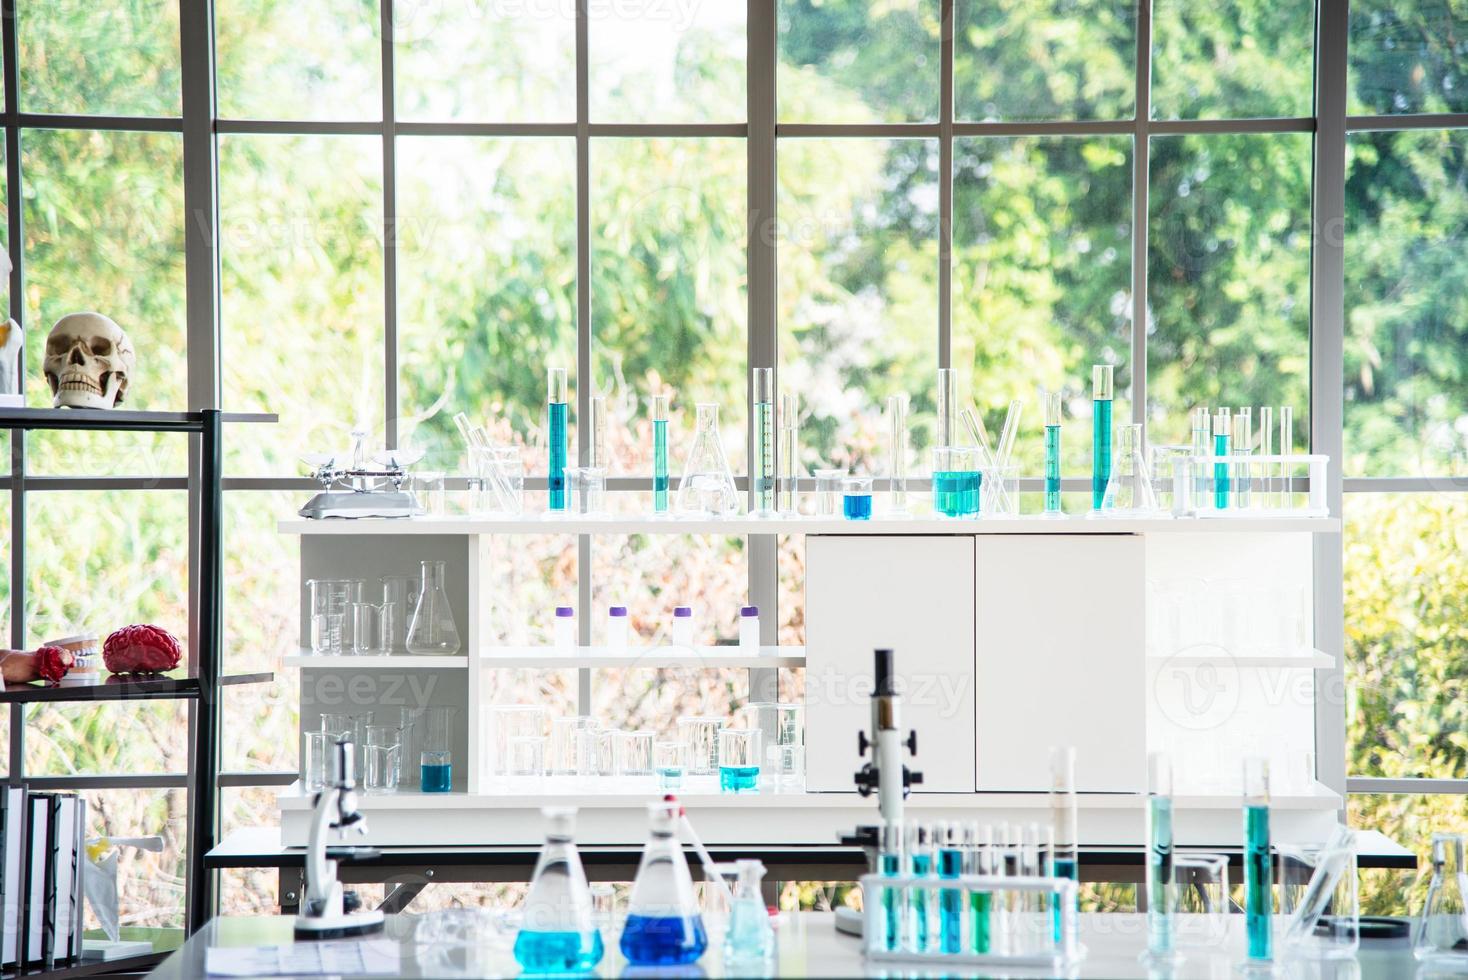 preparación de equipos de laboratorio como cristalería, tubo con líquido azul sobre la mesa blanca. el experimento químico en la investigación científica foto